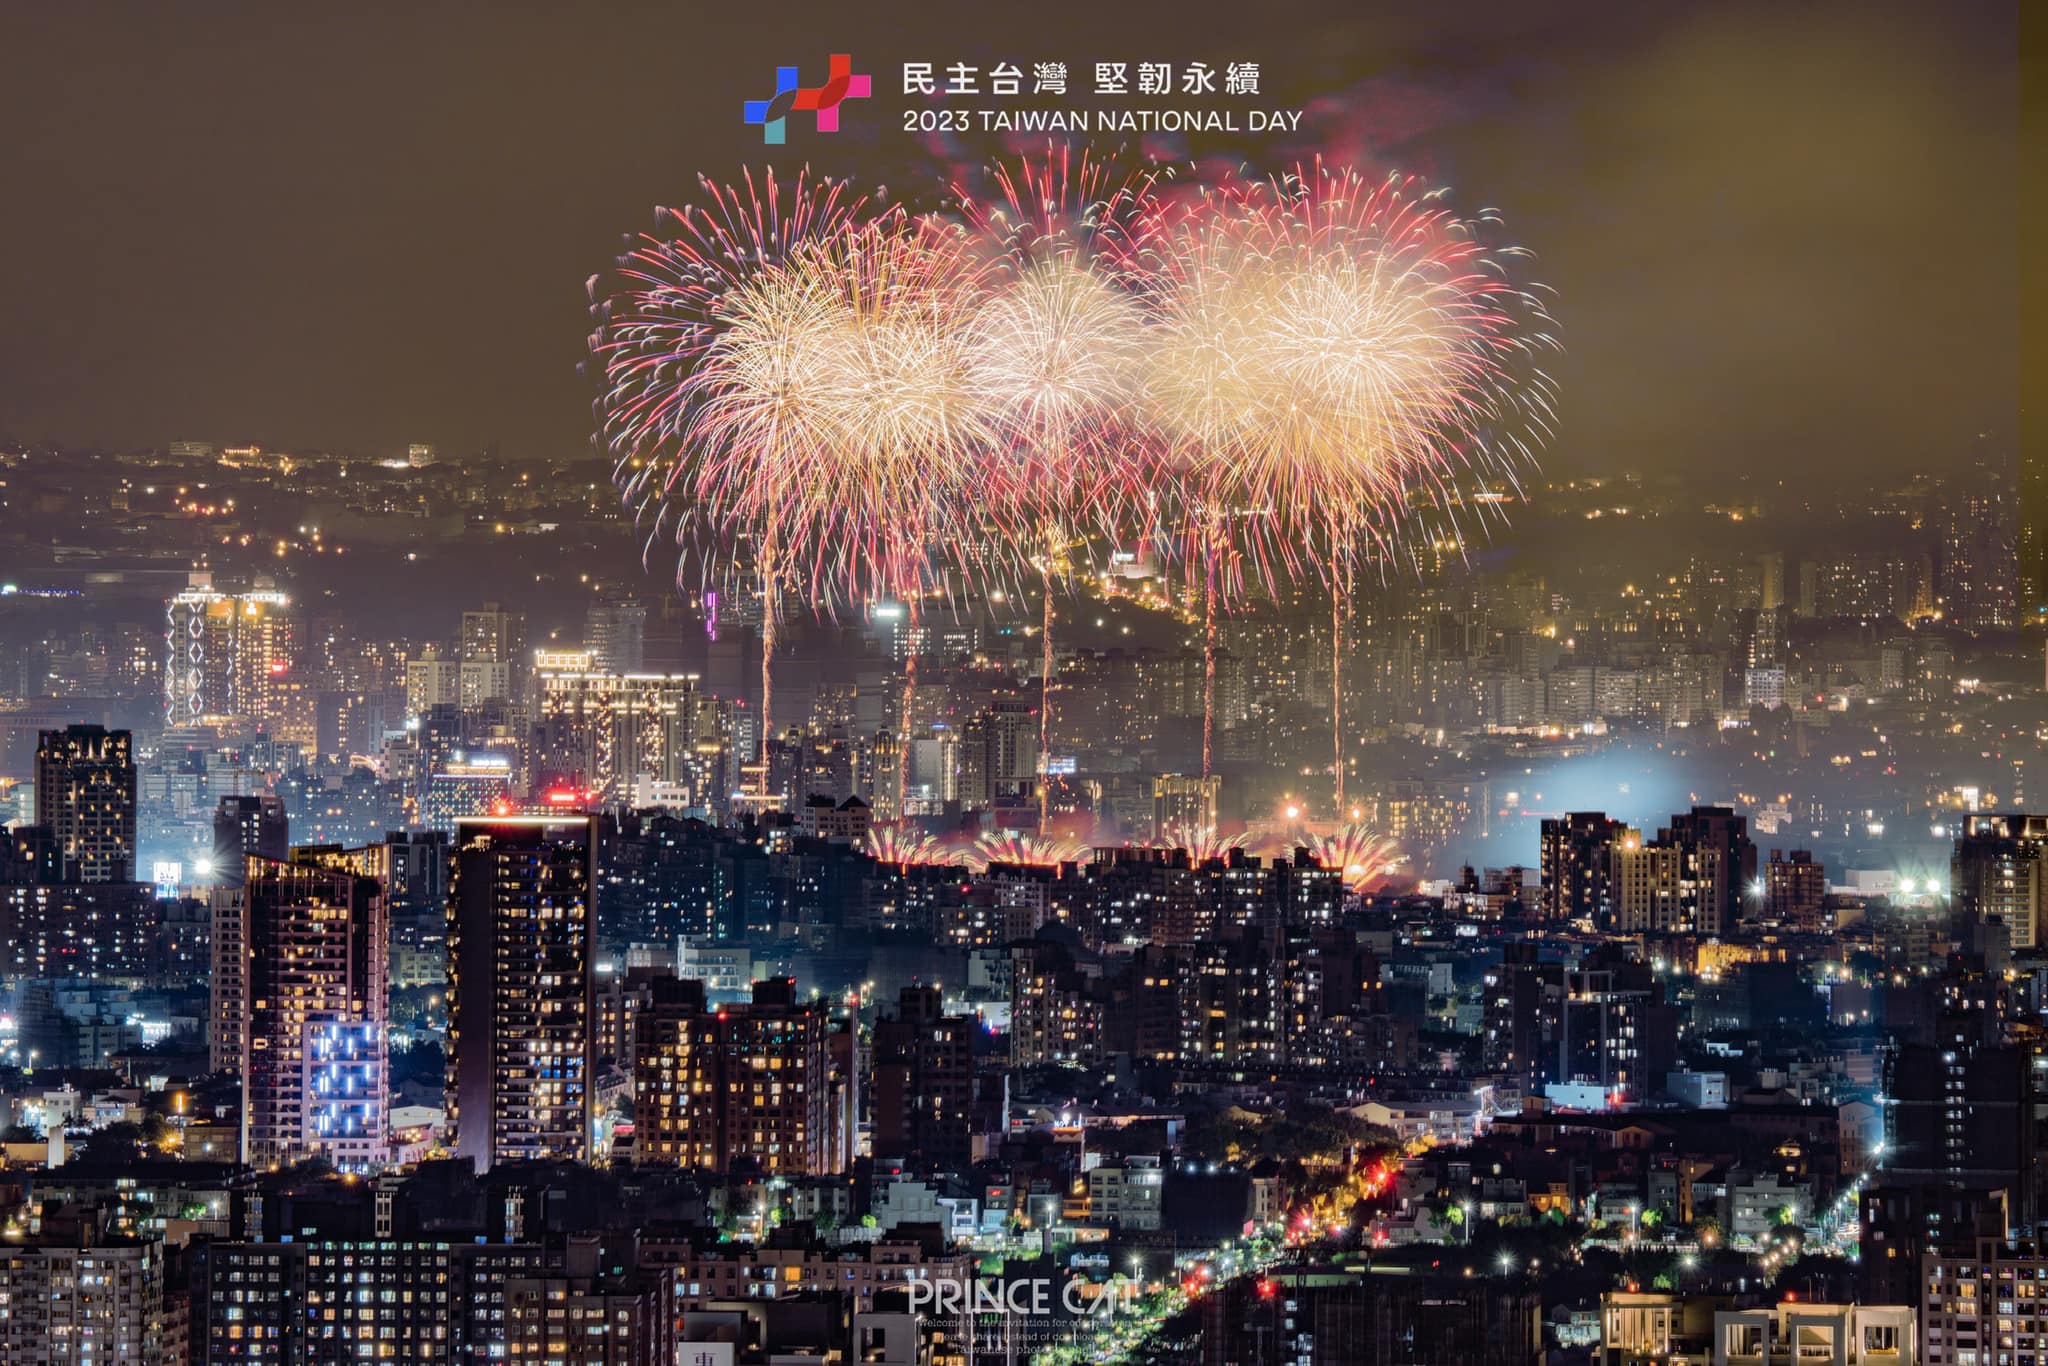 Bắn pháo hoa thử nghiệm chào mừng Lễ Quốc khánh. (Ảnh: Lấy từ Facebook Taiwan Fireworks Photography Club)